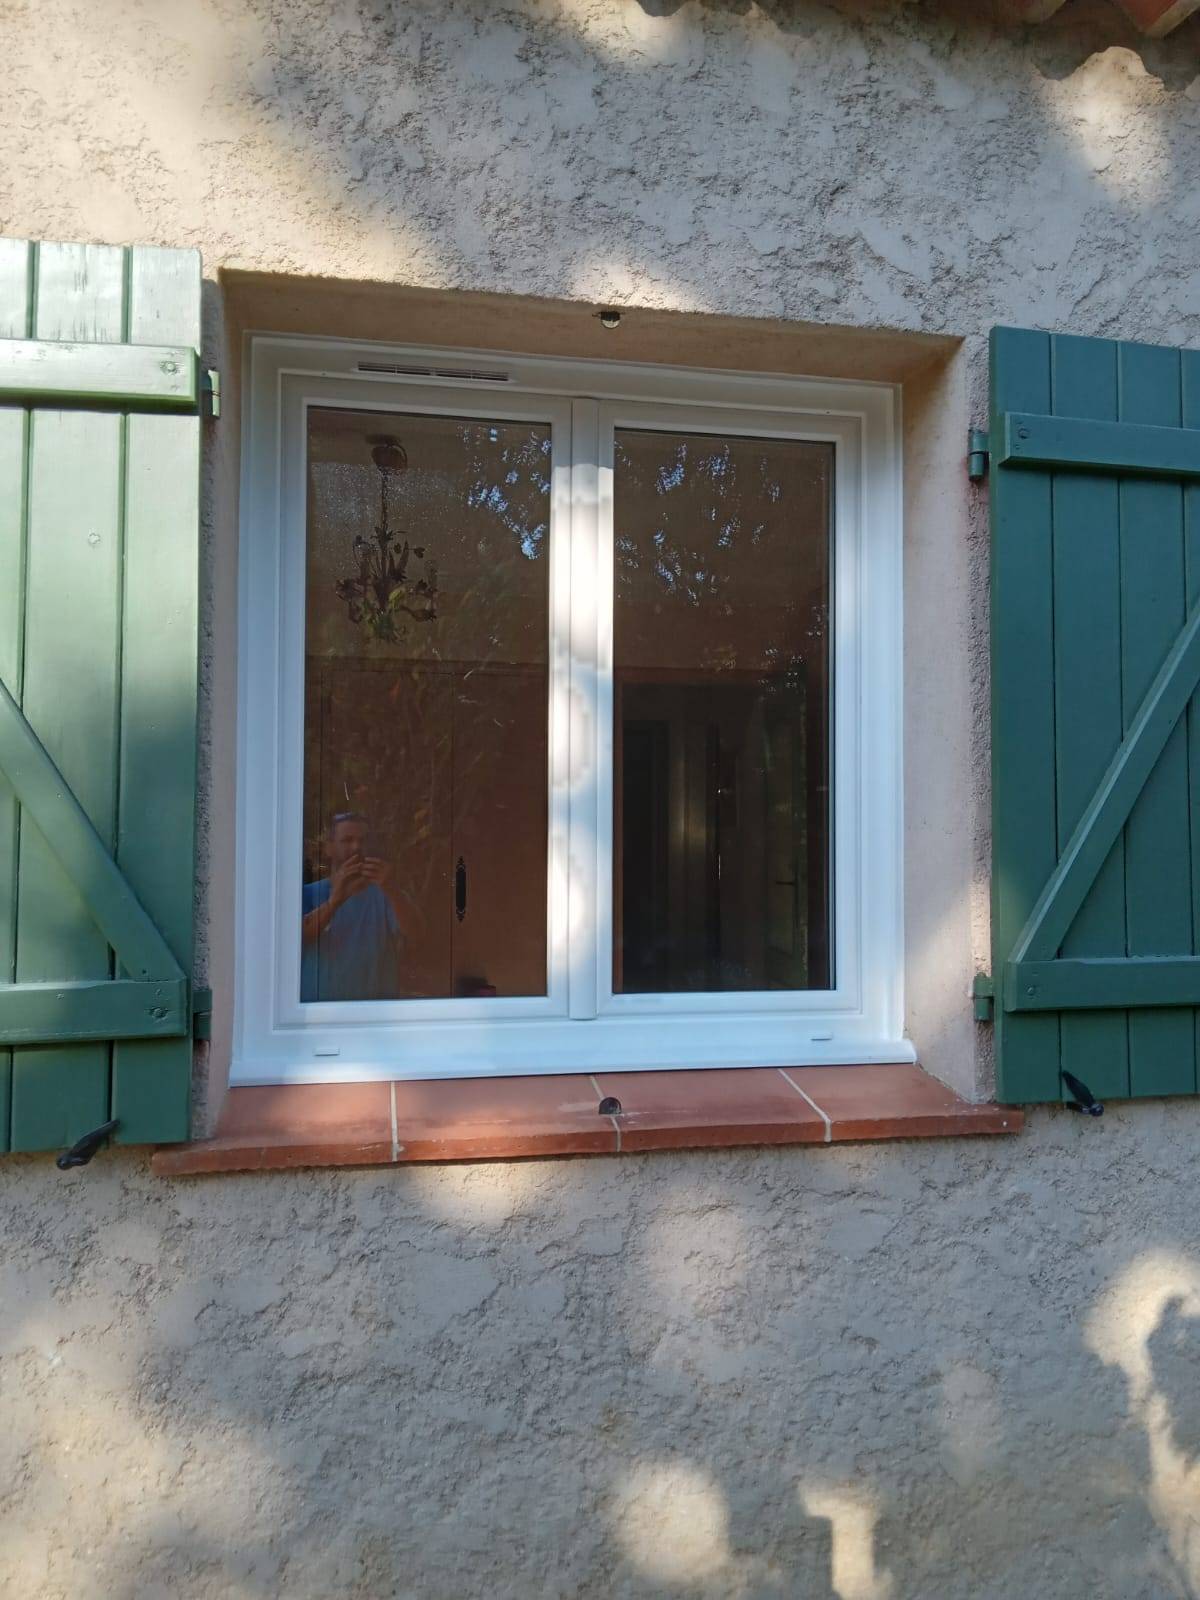 Installation de deux fenêtres bloc baie en pvc à Sainte-Maxime dans le  Golfe de Saint-Tropez - Entreprise de menuiserie à Cogolin dans le Var (83)  - ACL Menuiserie